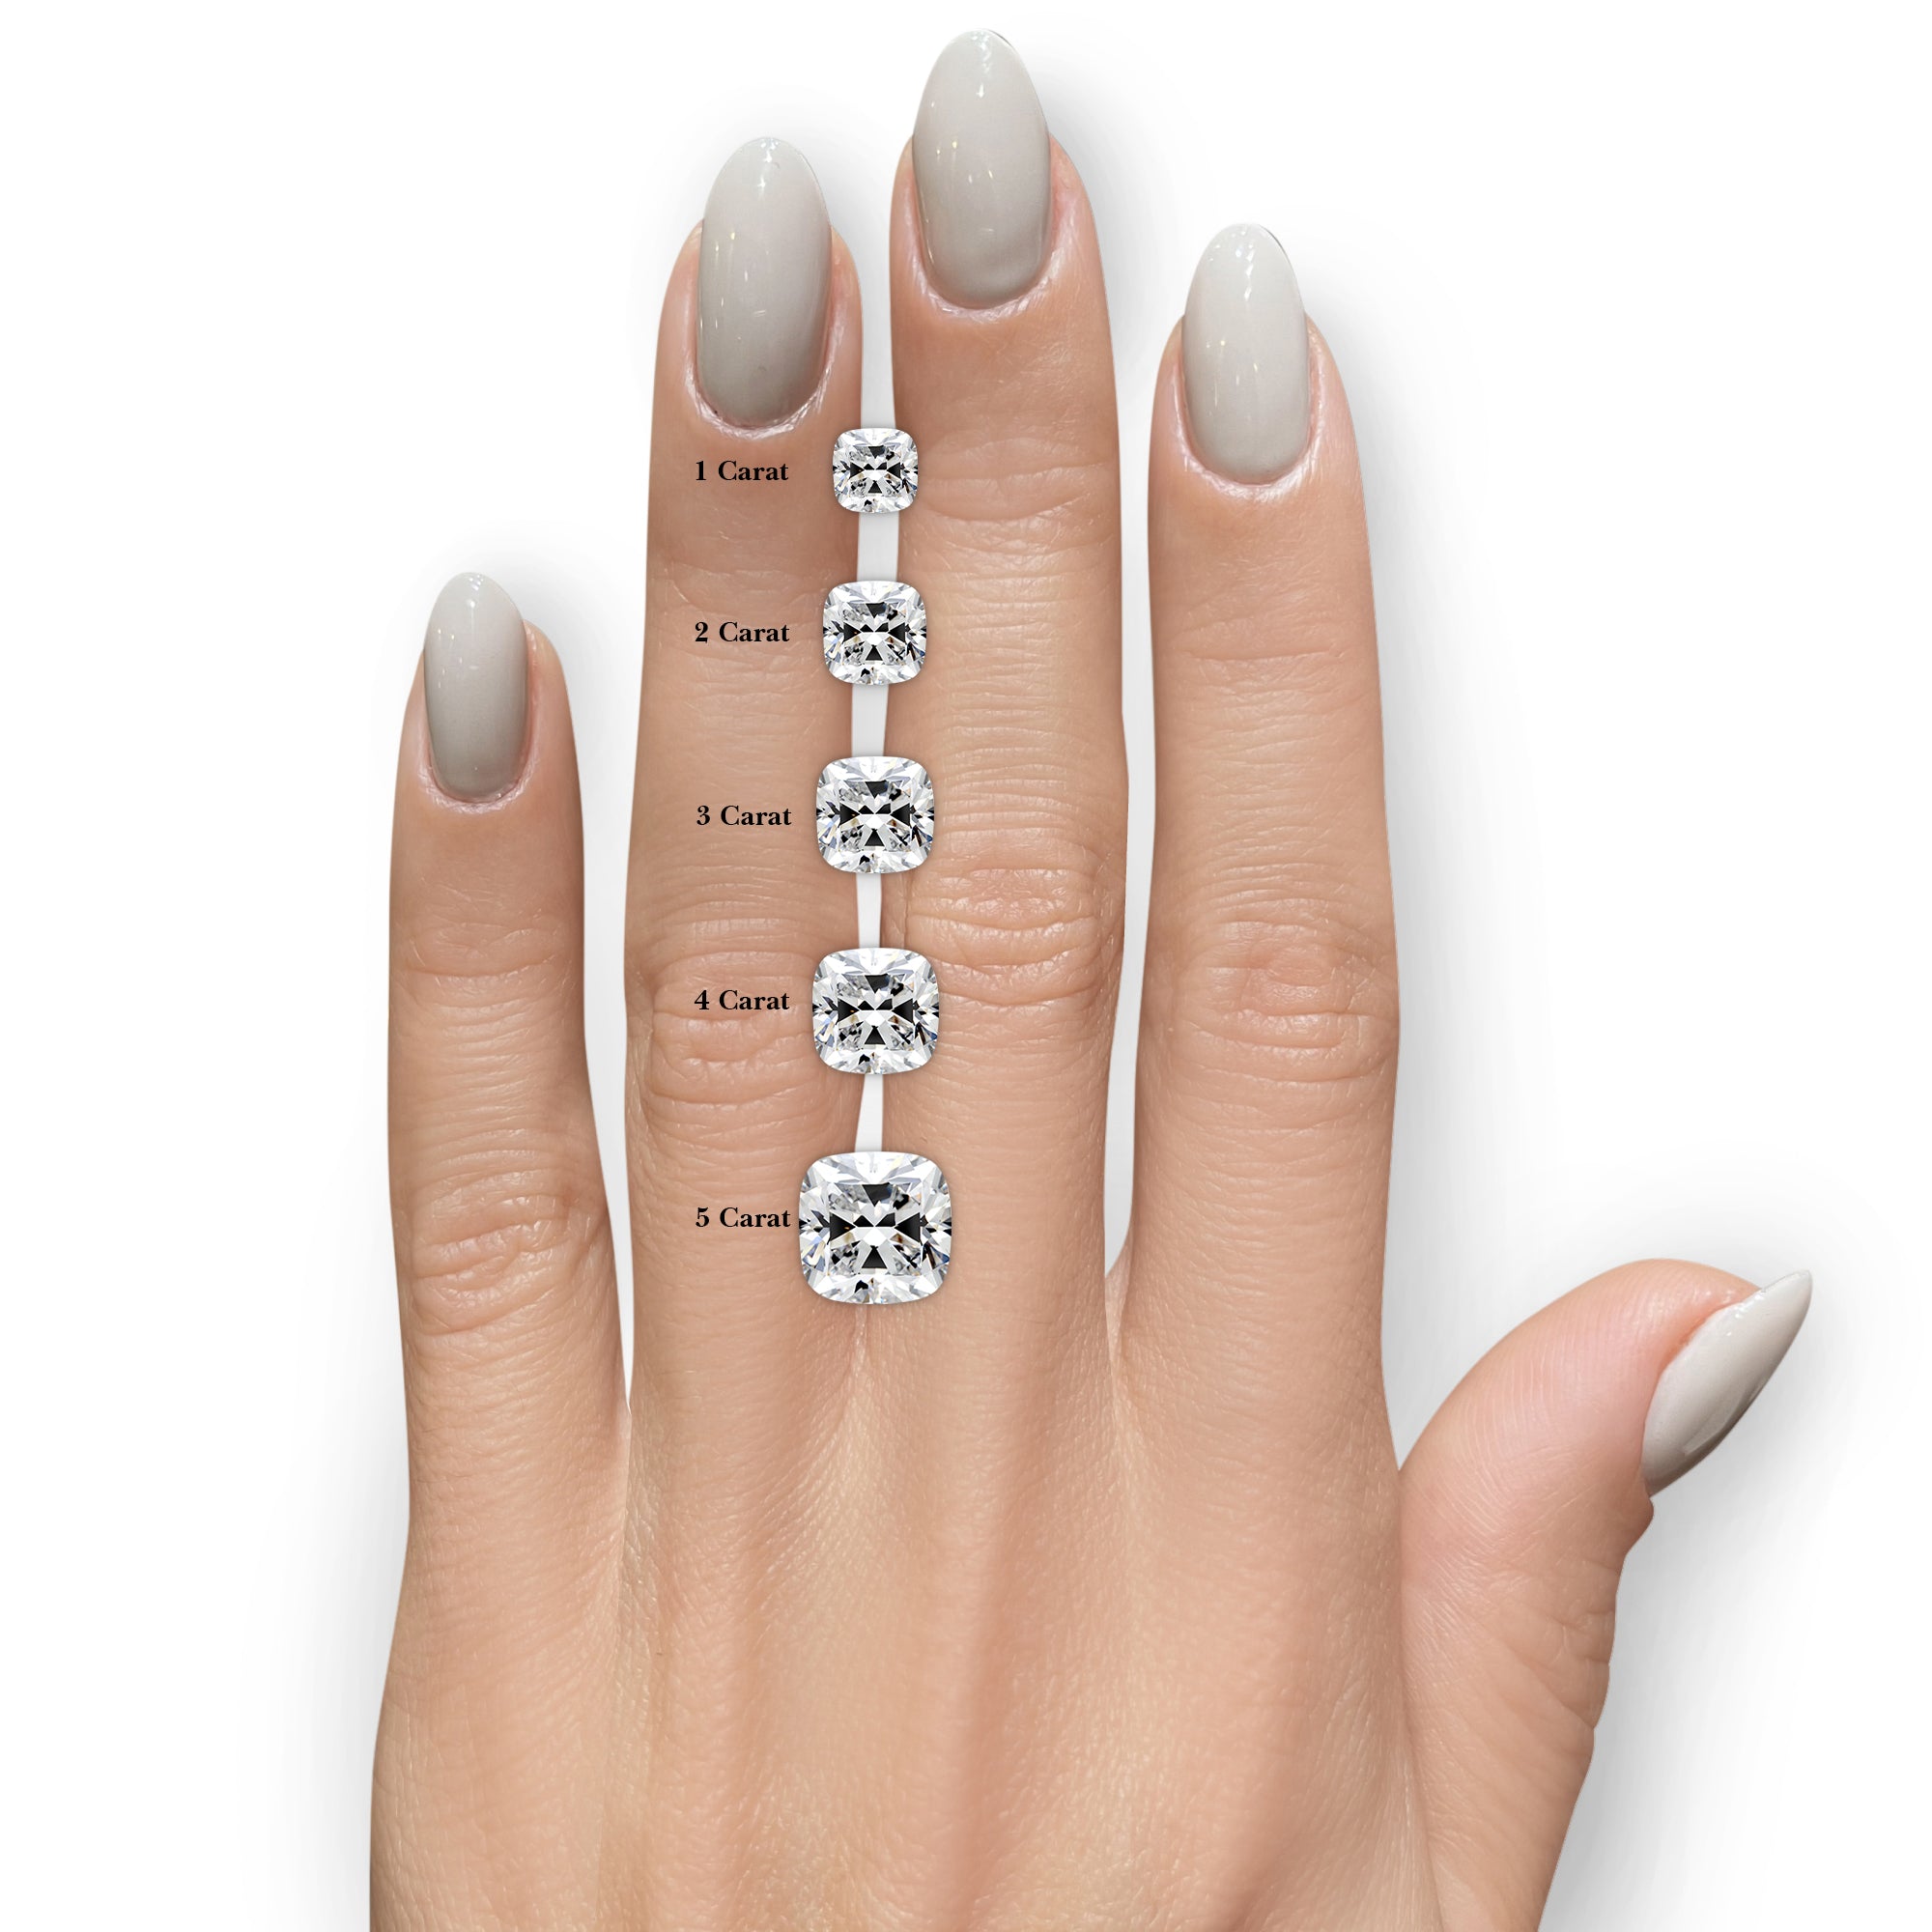 Tina Lab Grown Diamond Ring -18K White Gold